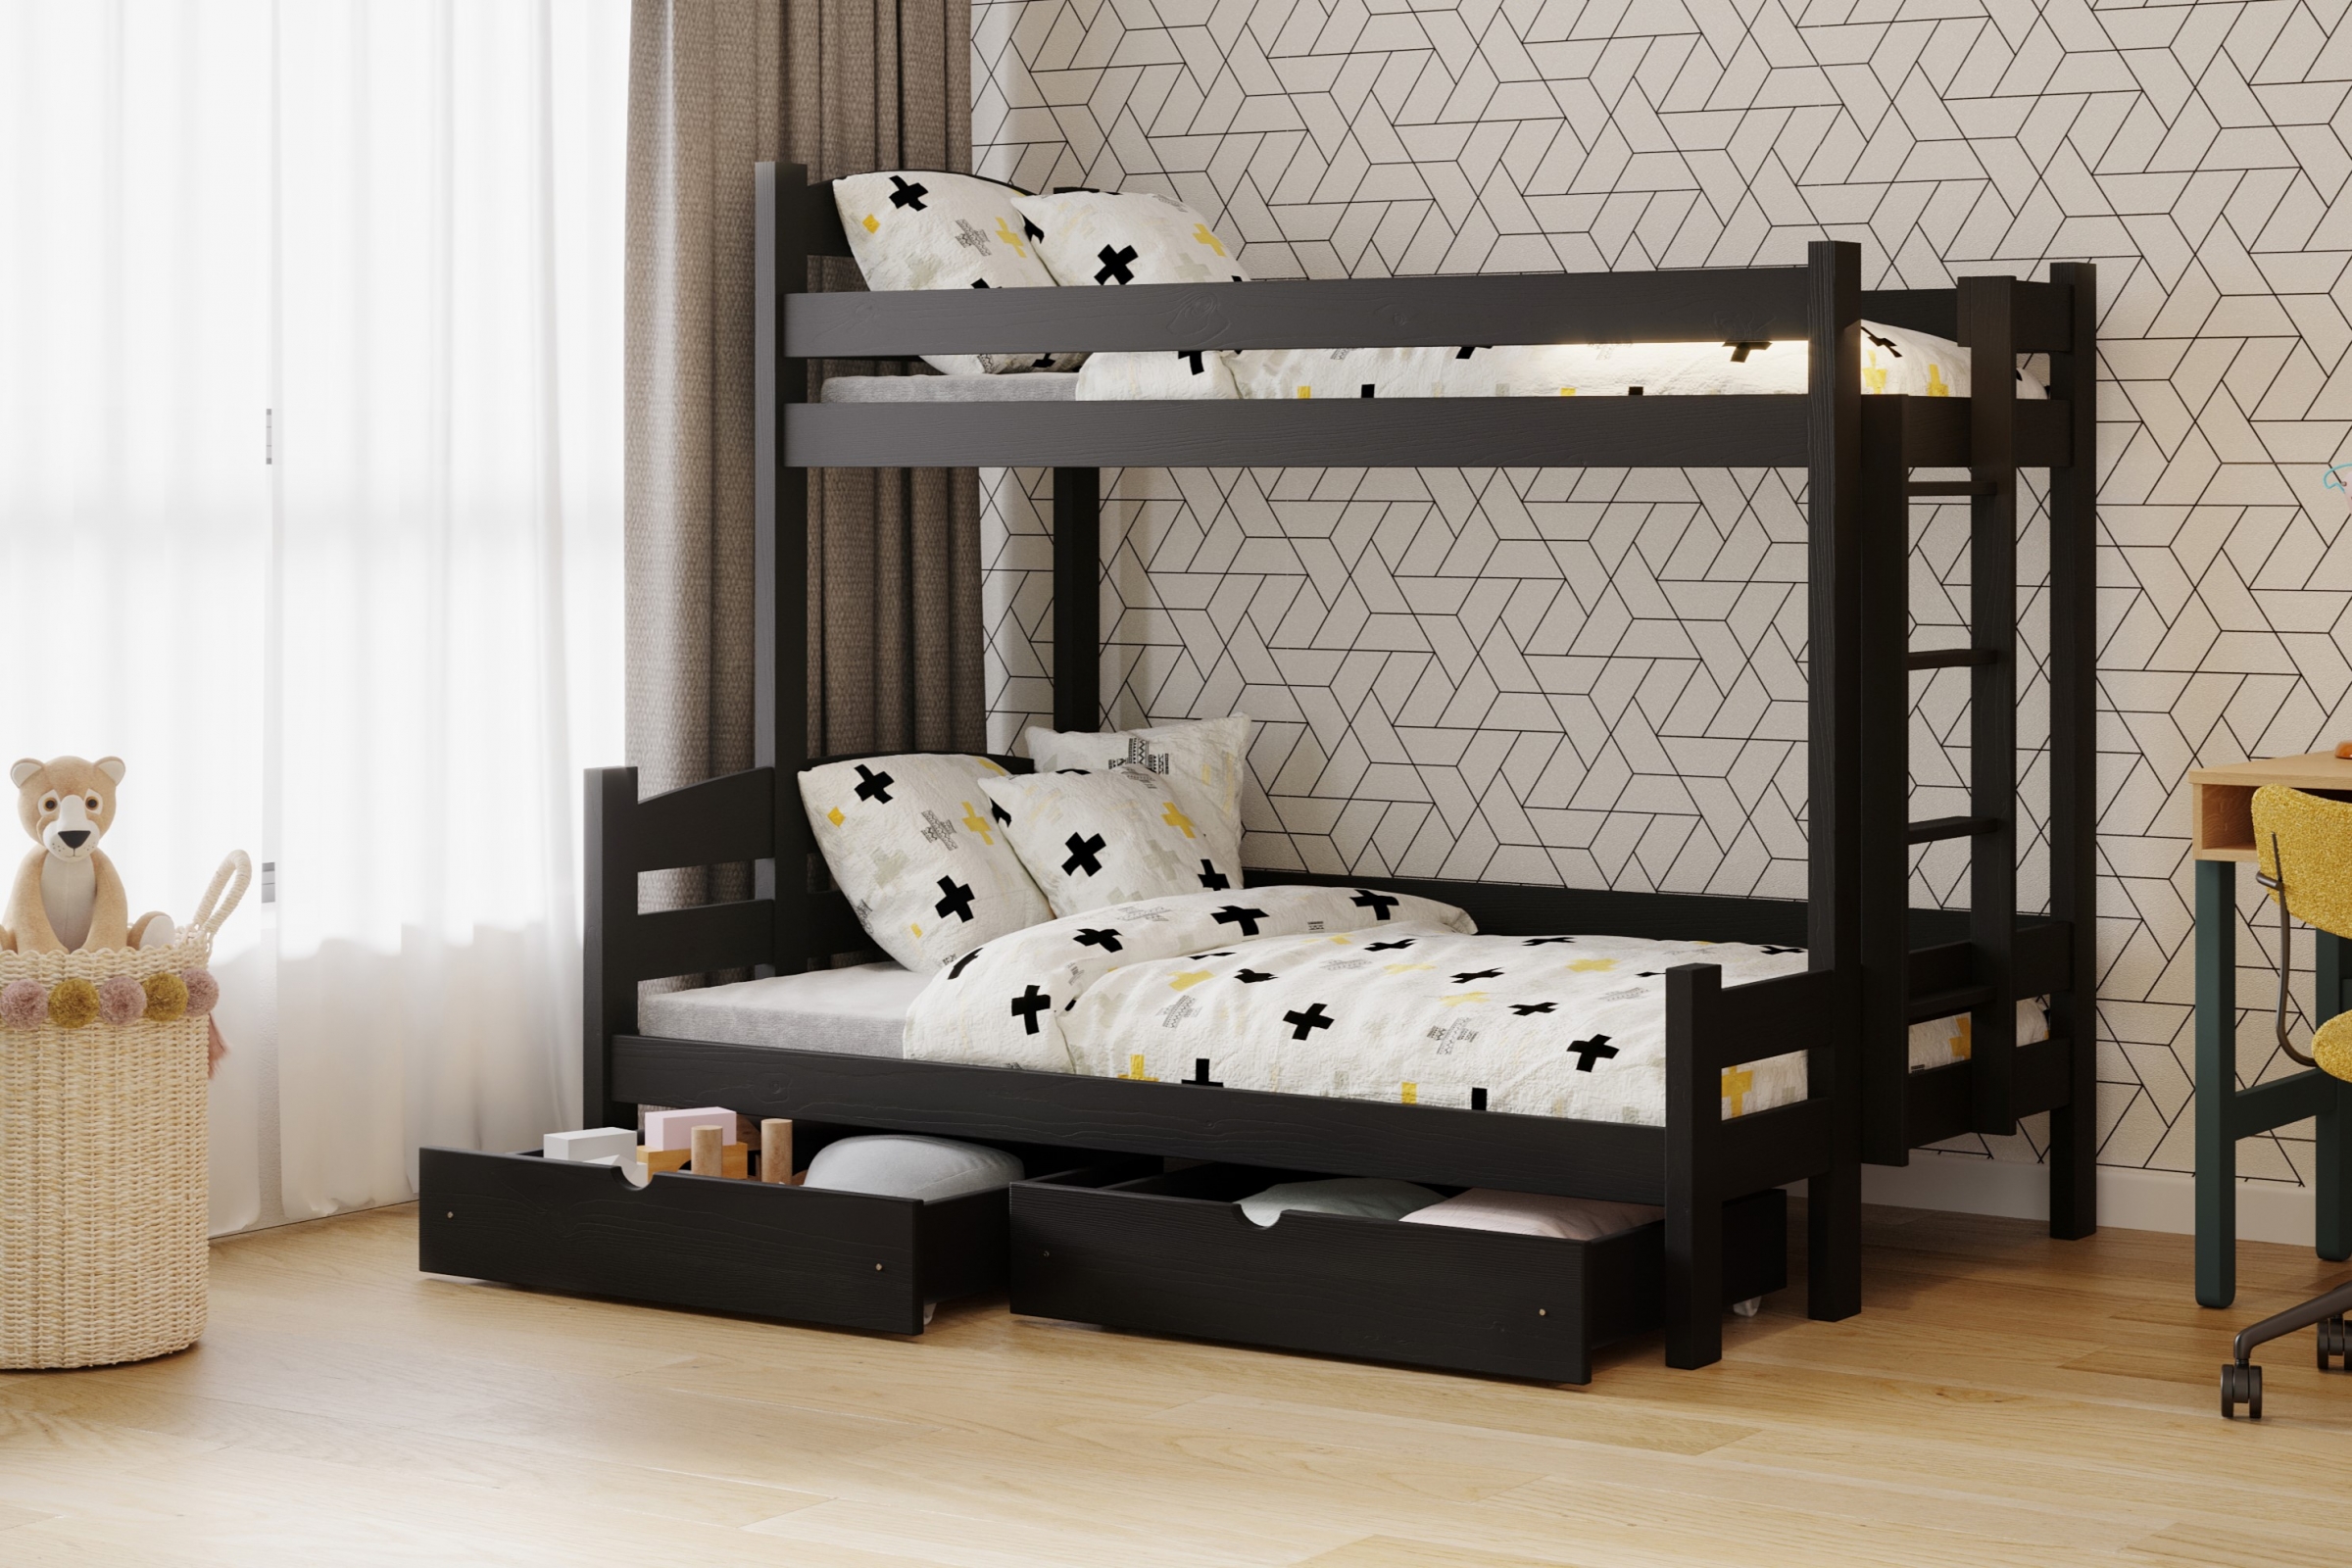 Lovic emeletes ágy, fiókokkal, bal oldali - 90x200 cm/140x200 cm - fekete Emeletes ágy fiokokkal Lovic - fekete - aranzacja